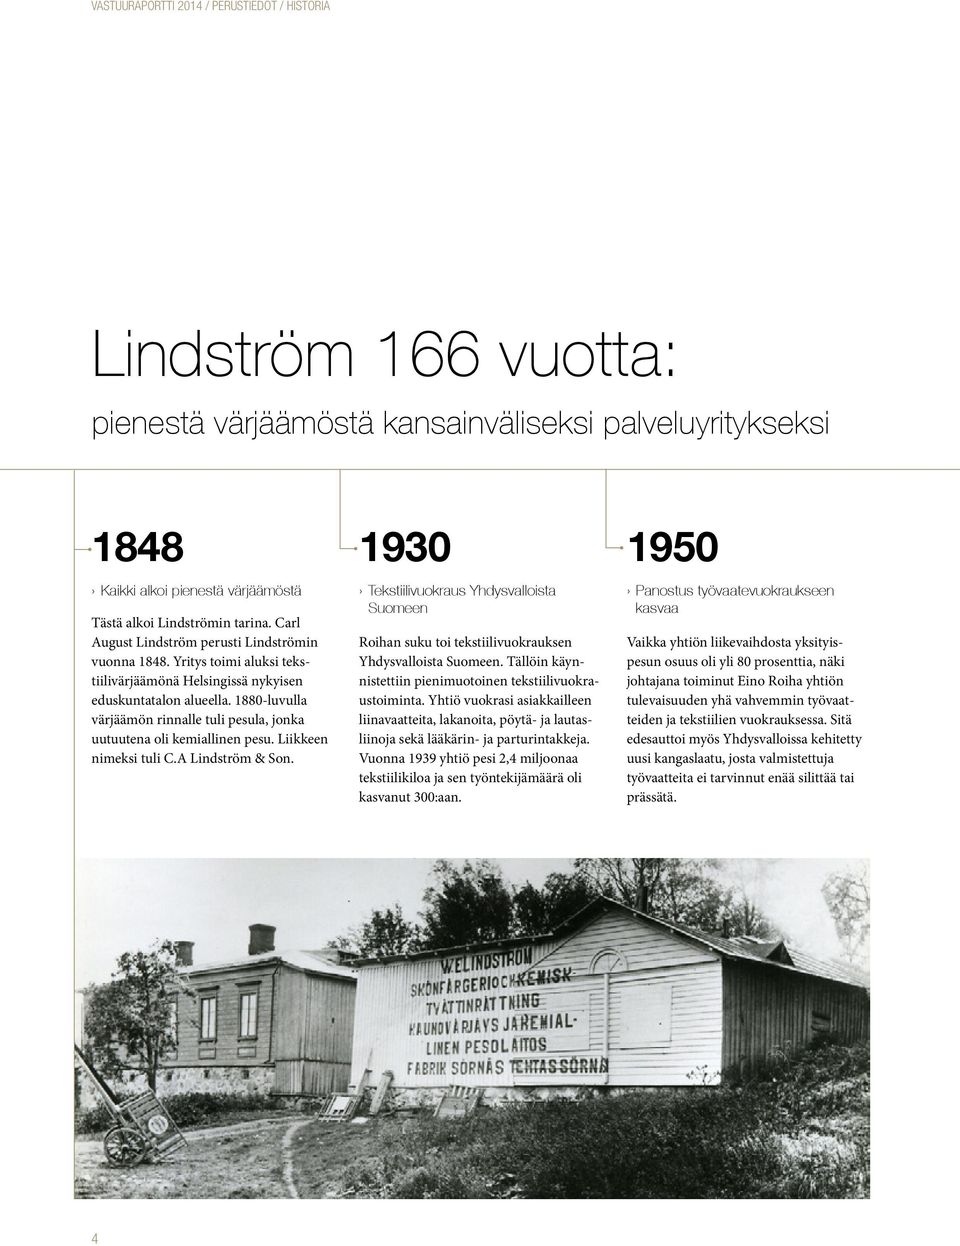 Yritys toimi aluksi tekstiilivärjäämönä Yhdysvalloista Suomeen. Tällöin käyn- Helsingissä nykyisen nistettiin pienimuotoinen tekstiilivuokra- eduskuntatalon alueella. 1880-luvulla ustoiminta.